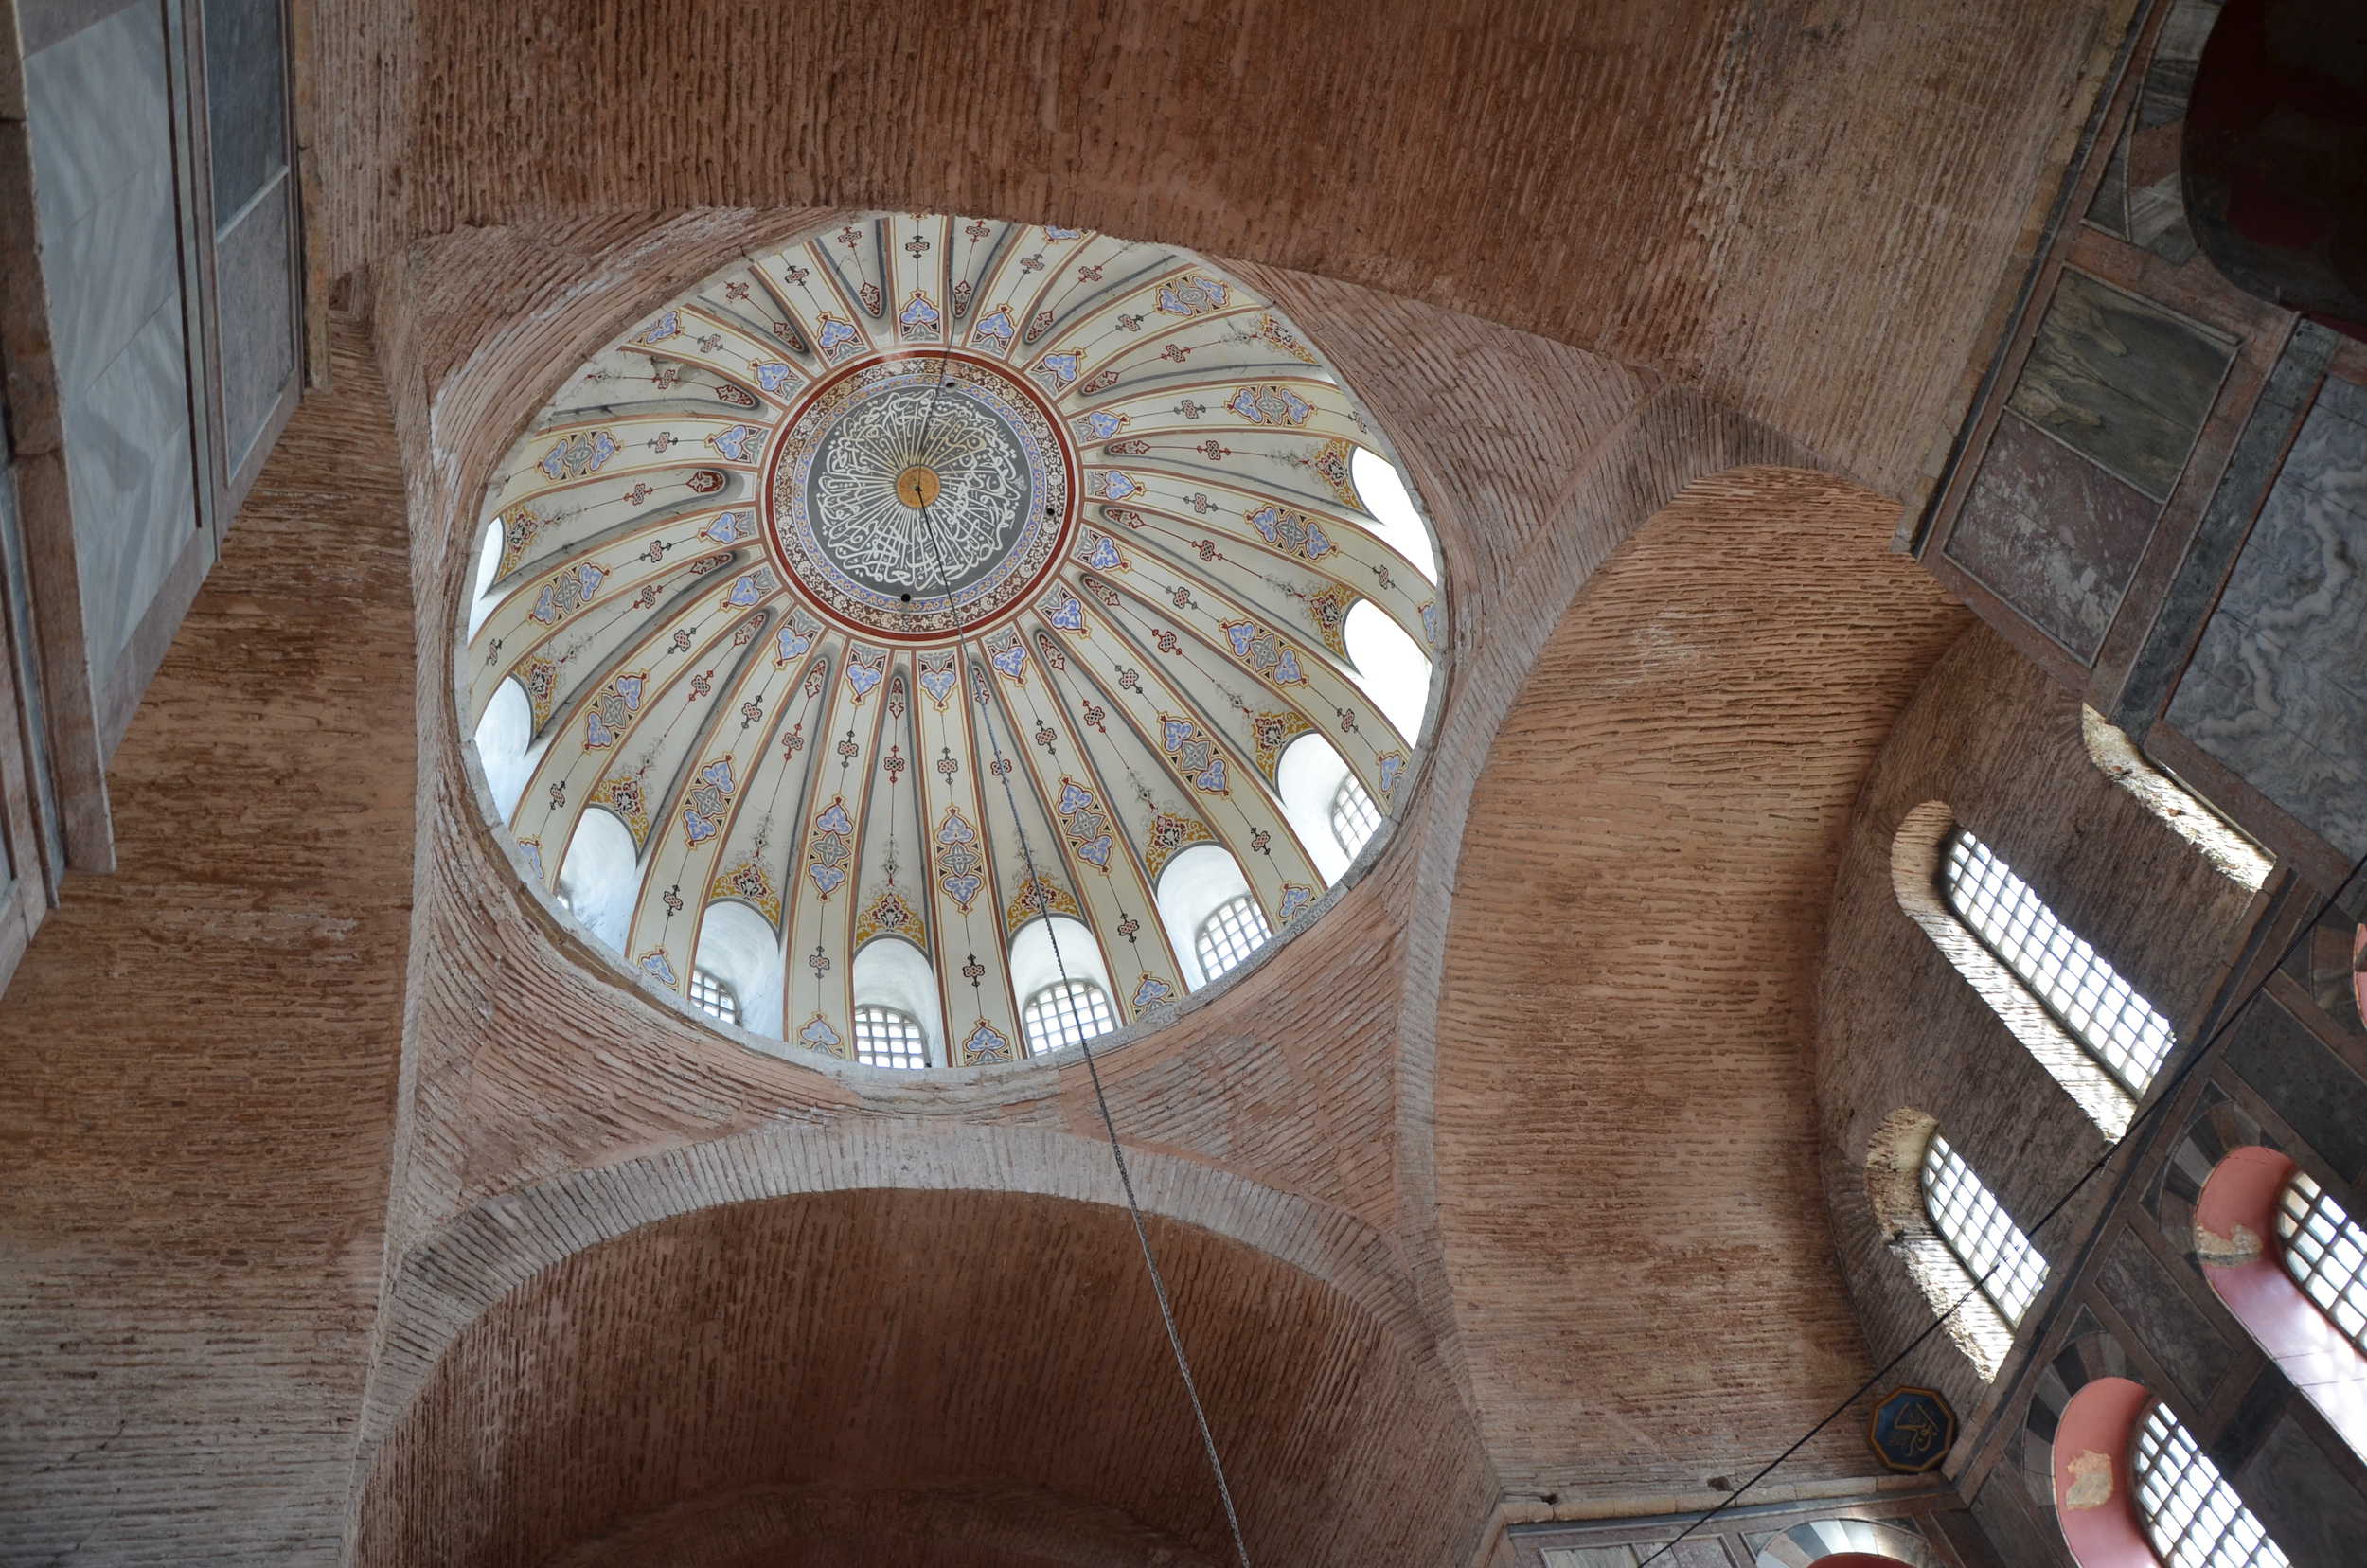 Dome of the Kalenderhane Mosque in Şehzadebaşı, Istanbul, Turkey